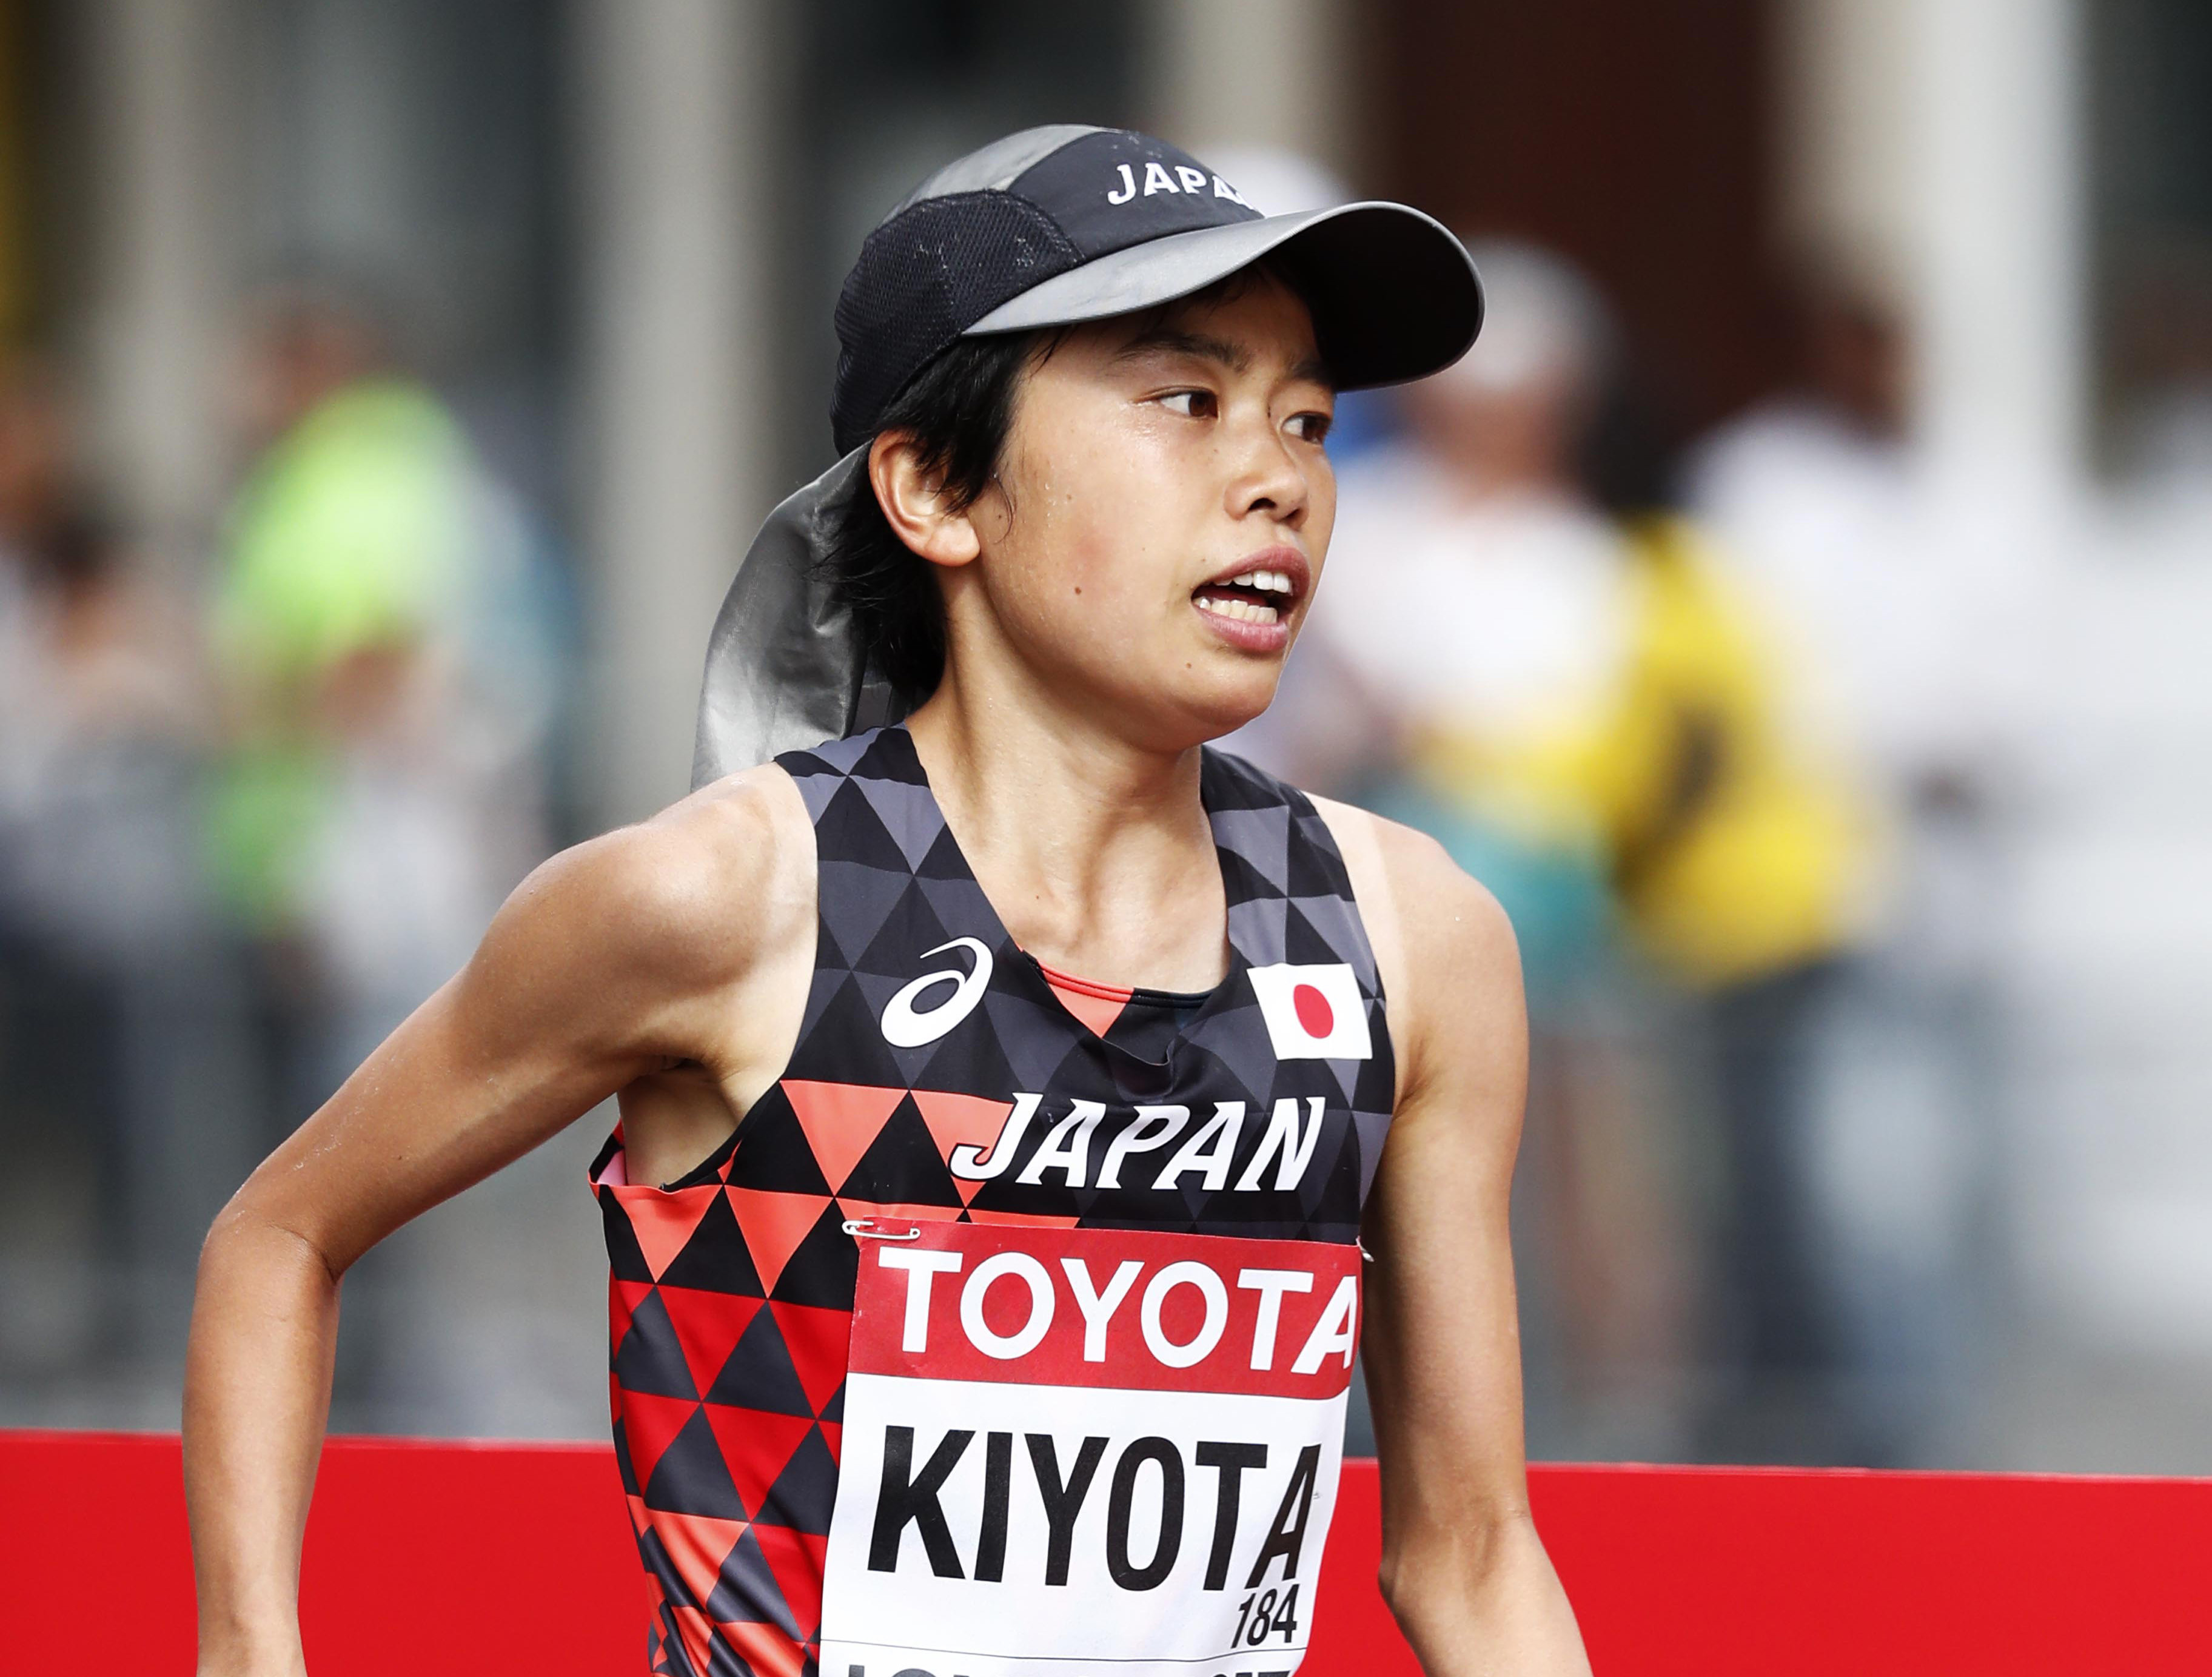 女子マラソン、日本は入賞ゼロの屈辱。「遅くても強い」米国との違い